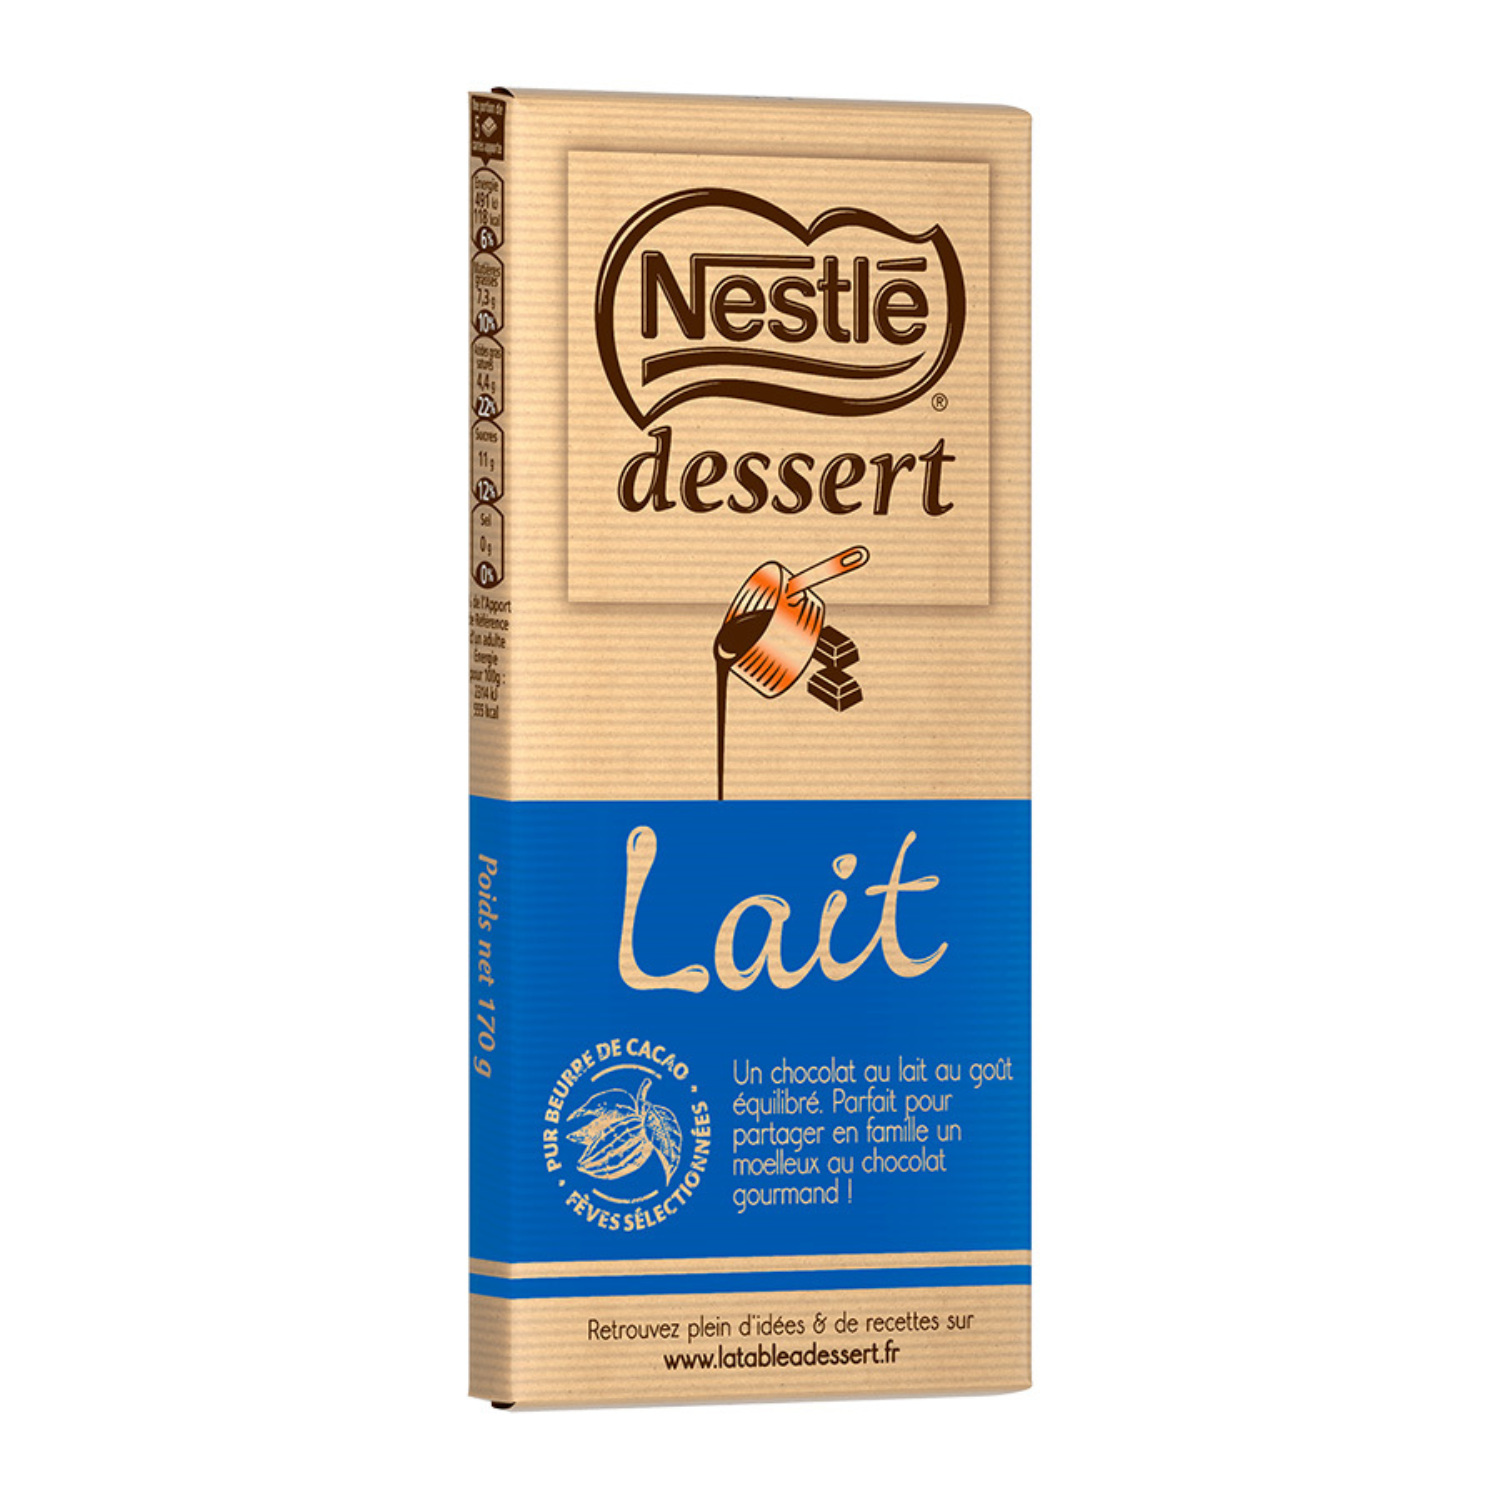 https://lecomptoirdelapatisserie.com/files/picture/e952555f/nestle-dessert-tablette-chocolat-lait-le-comptoir-de-la-patisserie-1500-0.jpg